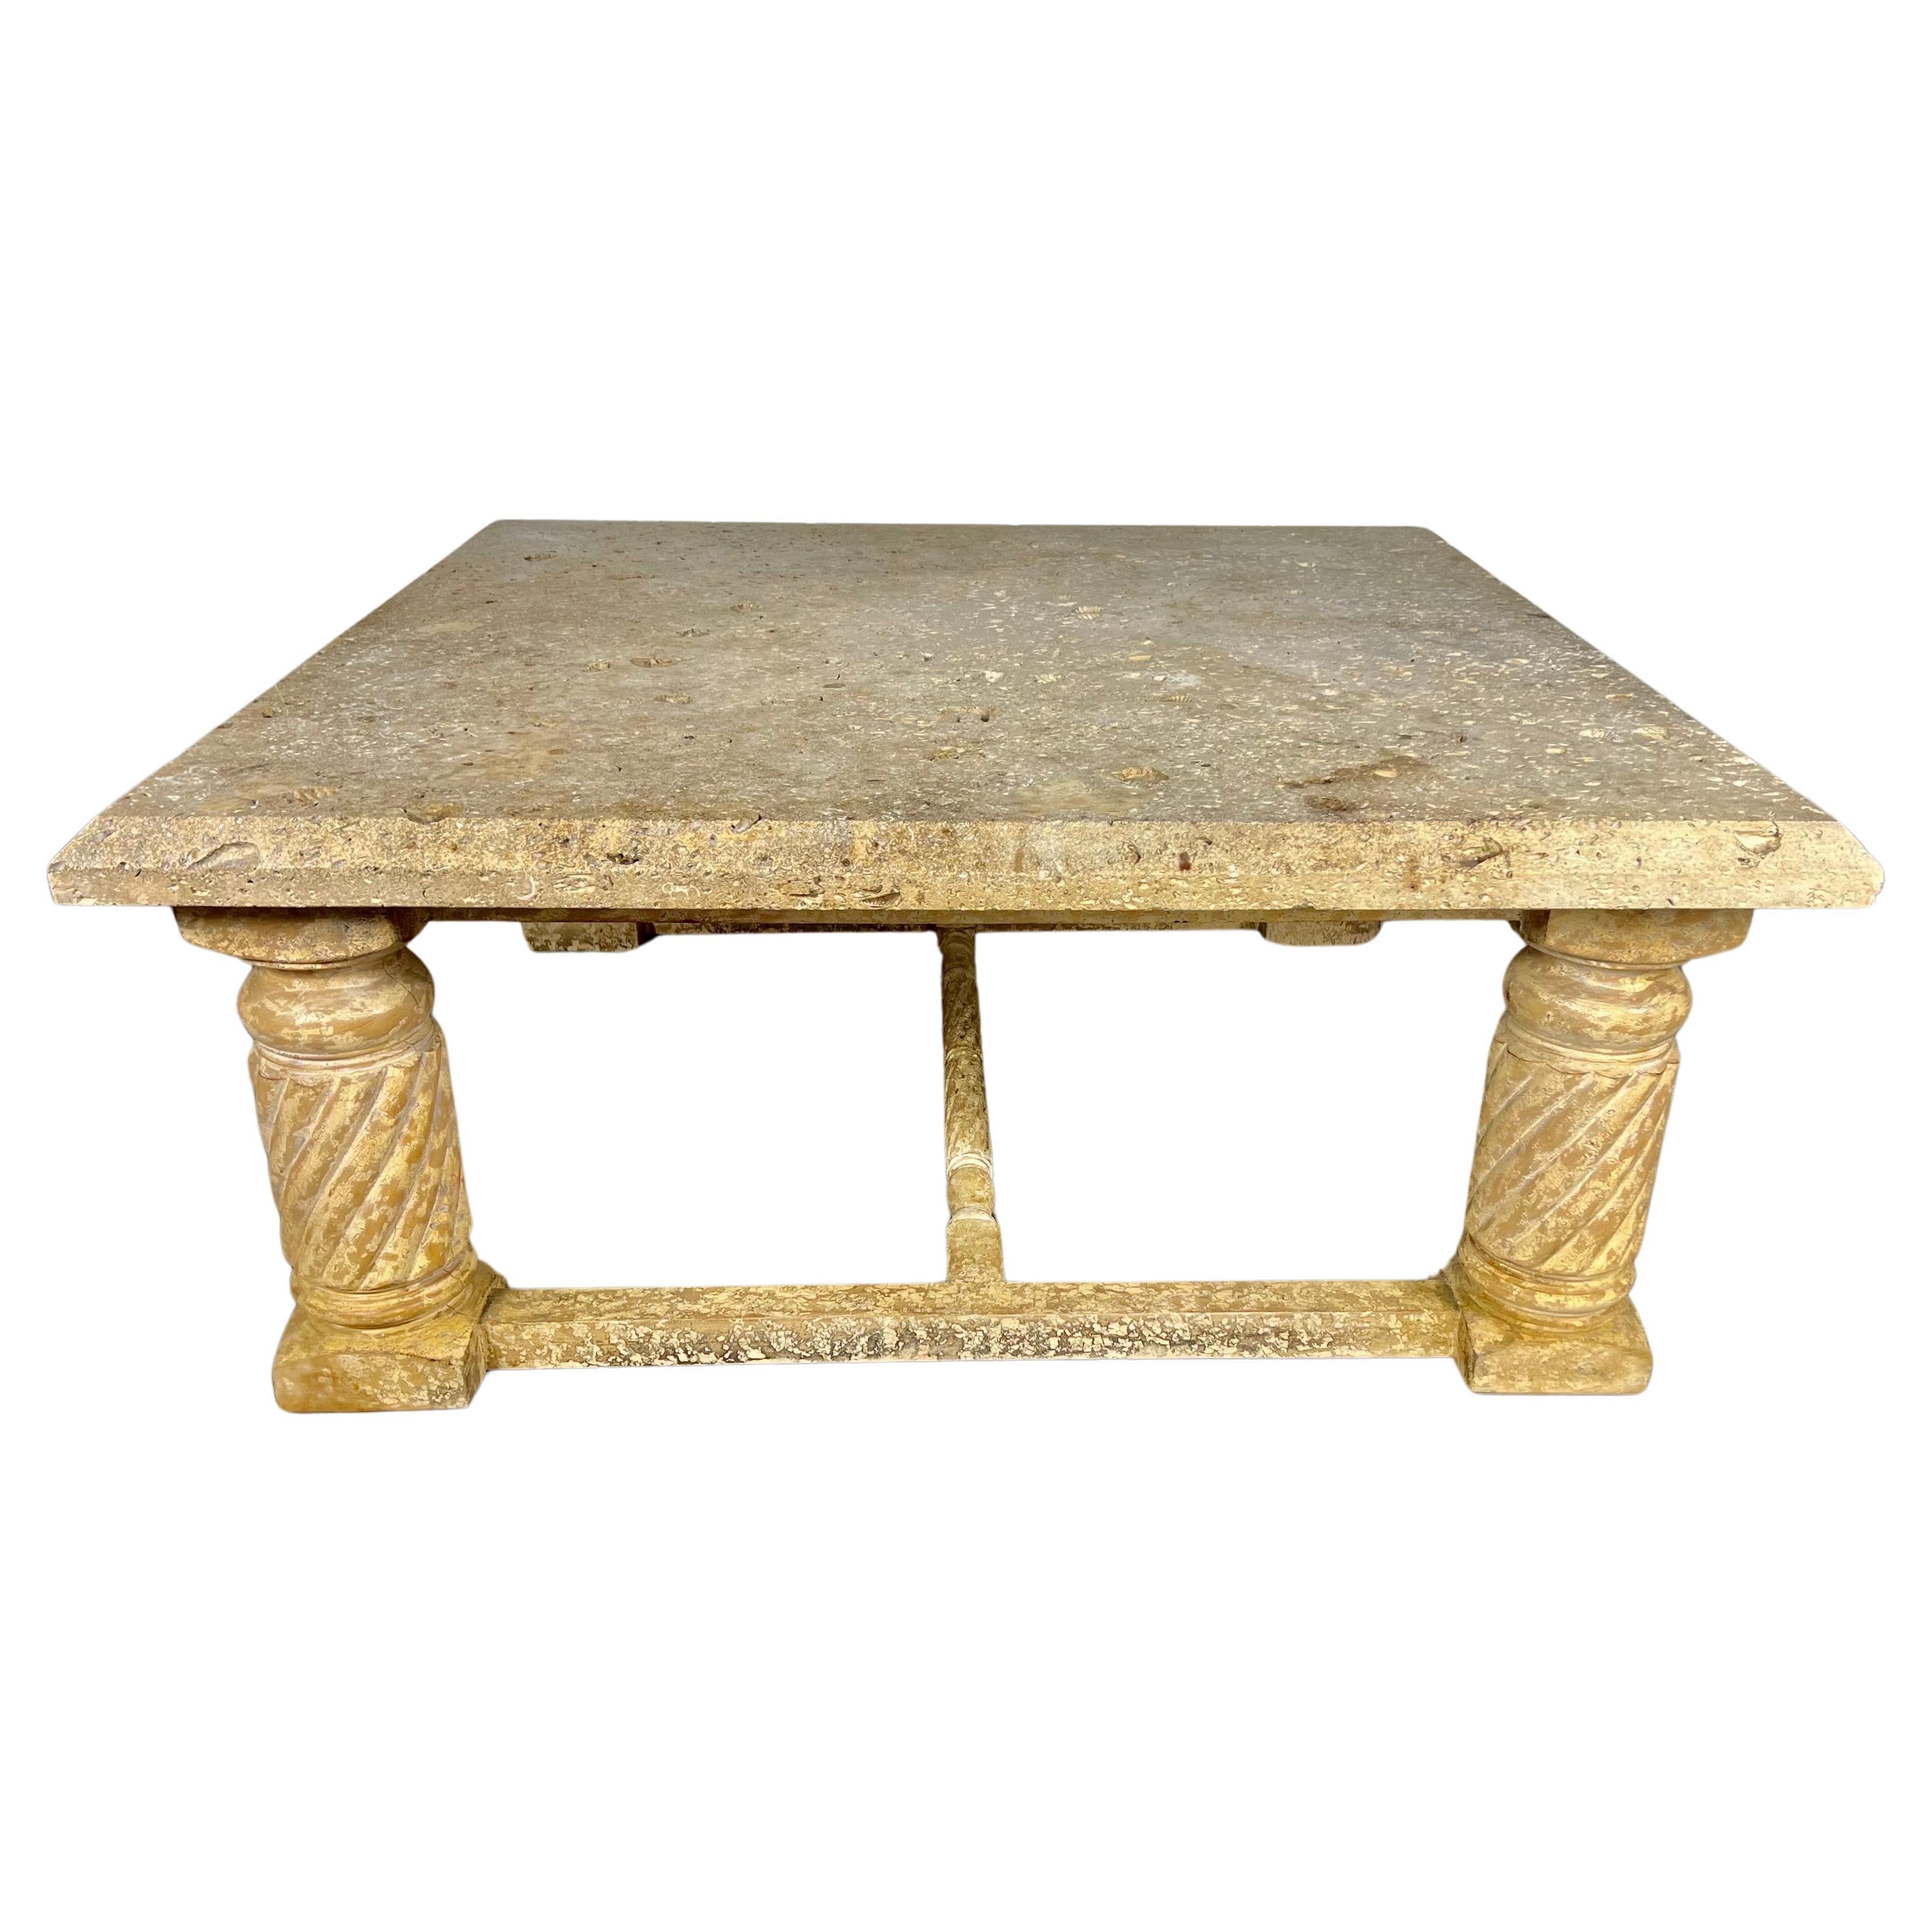 Italienischer Couchtisch im neoklassizistischen Stil des späten 20. Jahrhunderts.  Der Tisch steht auf vier geraden Beinen aus gedrechseltem Holz.  Der Holzsockel hat ein schönes Craquelé-Finish.  Die Kalksteinplatte ist durchgehend mit Muscheln